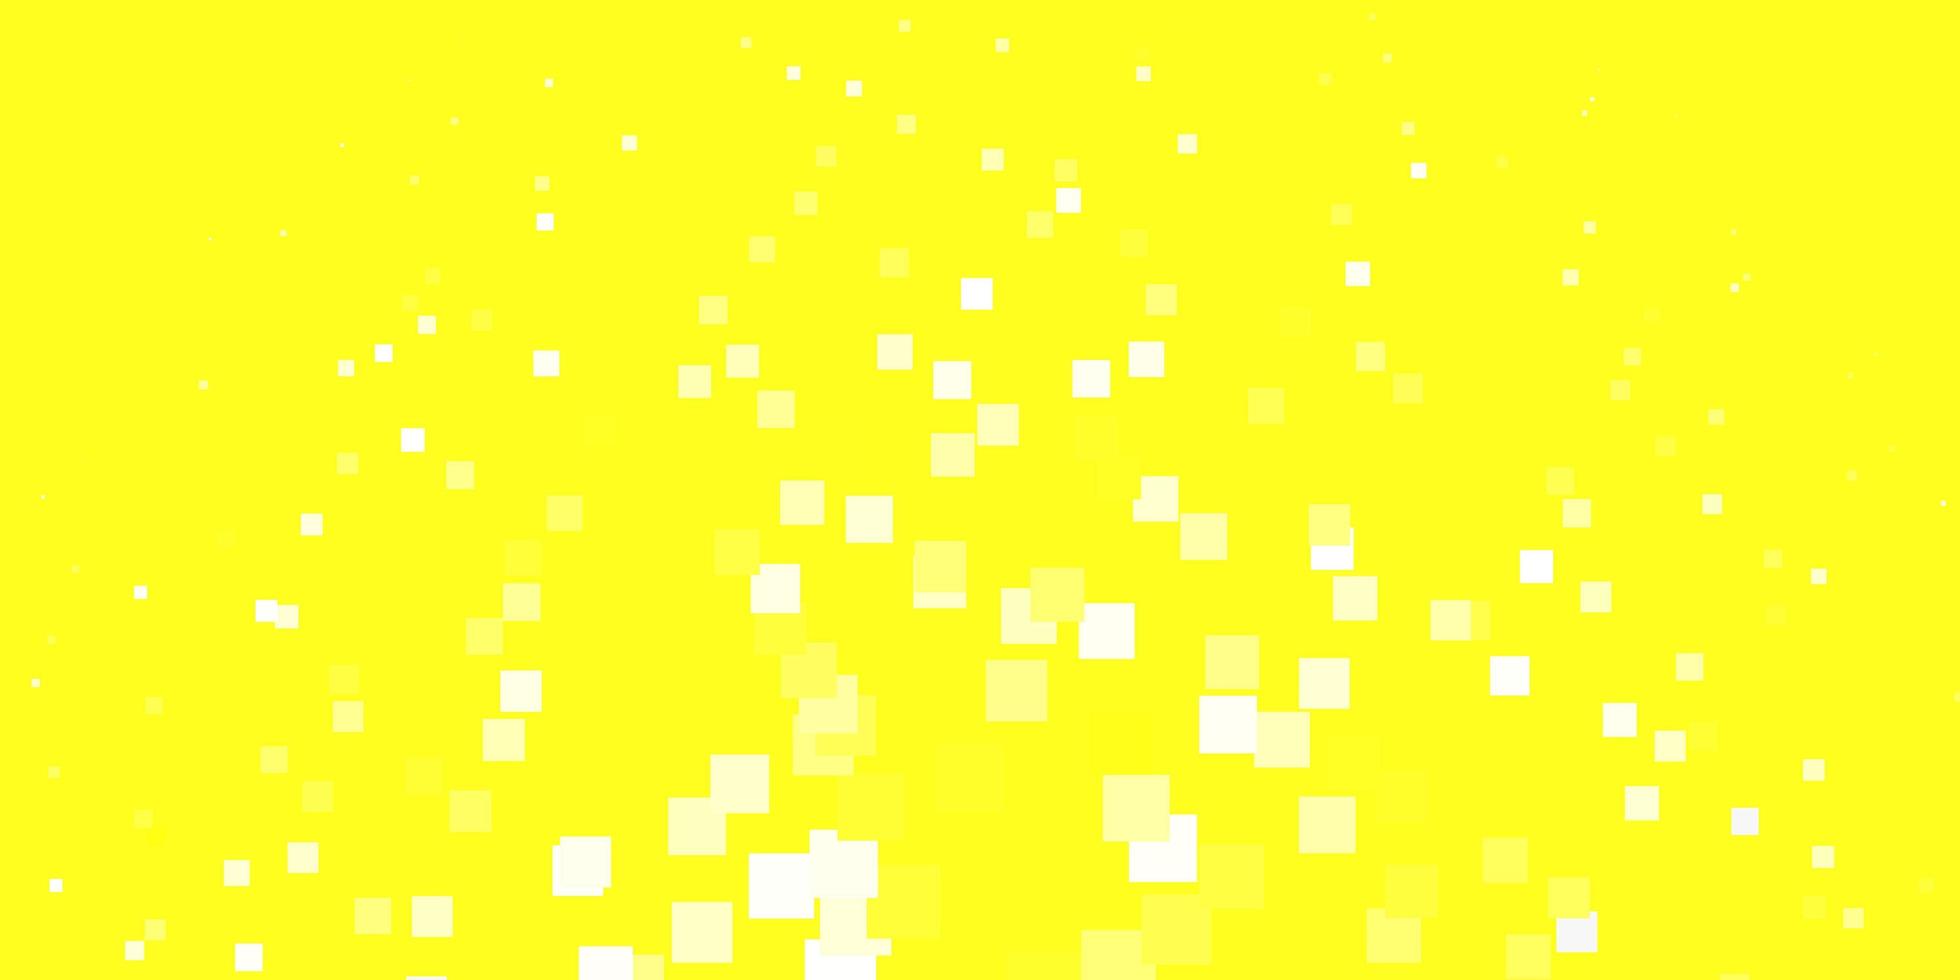 textura de vector amarillo claro en estilo rectangular nueva ilustración abstracta con patrón de formas rectangulares para páginas de destino de sitios web